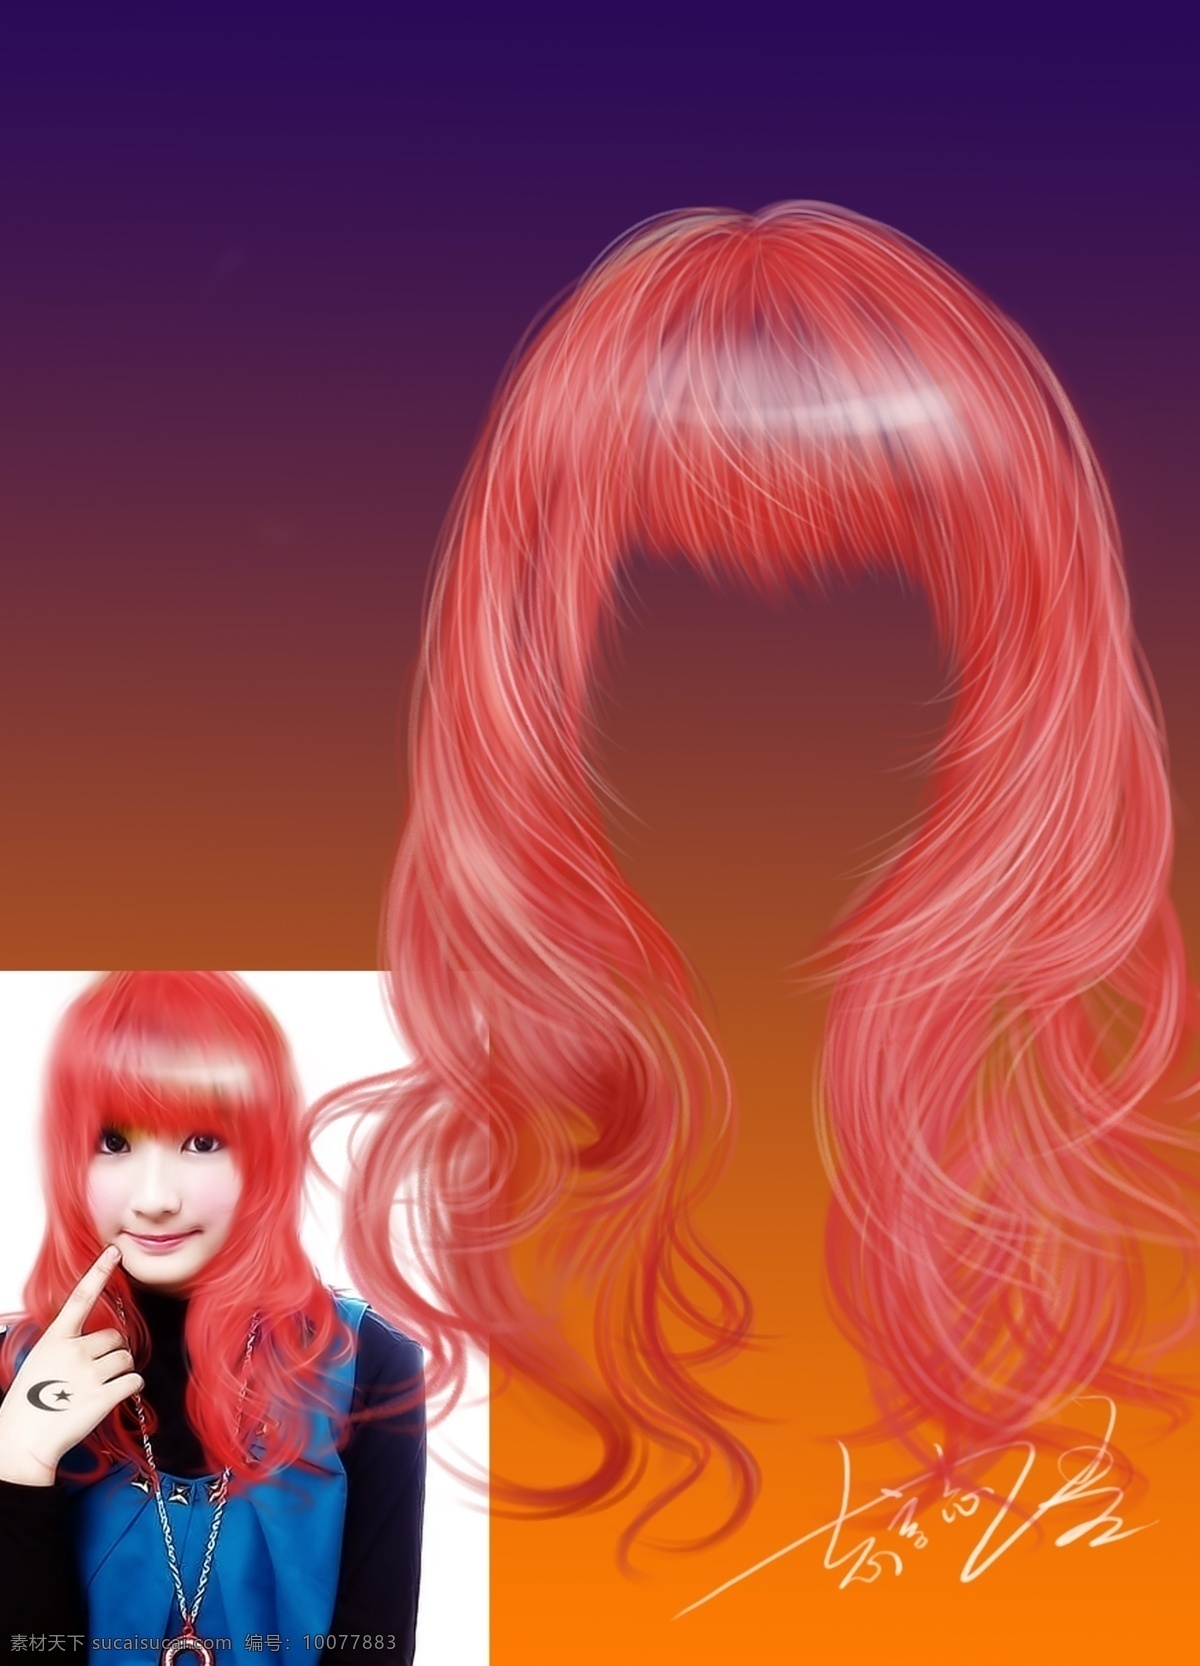 梦幻头发女 影楼 psd素材 头发 红头发 psd头发 发形设计 女生女型 女士发型 女孩头发 源文件 分层